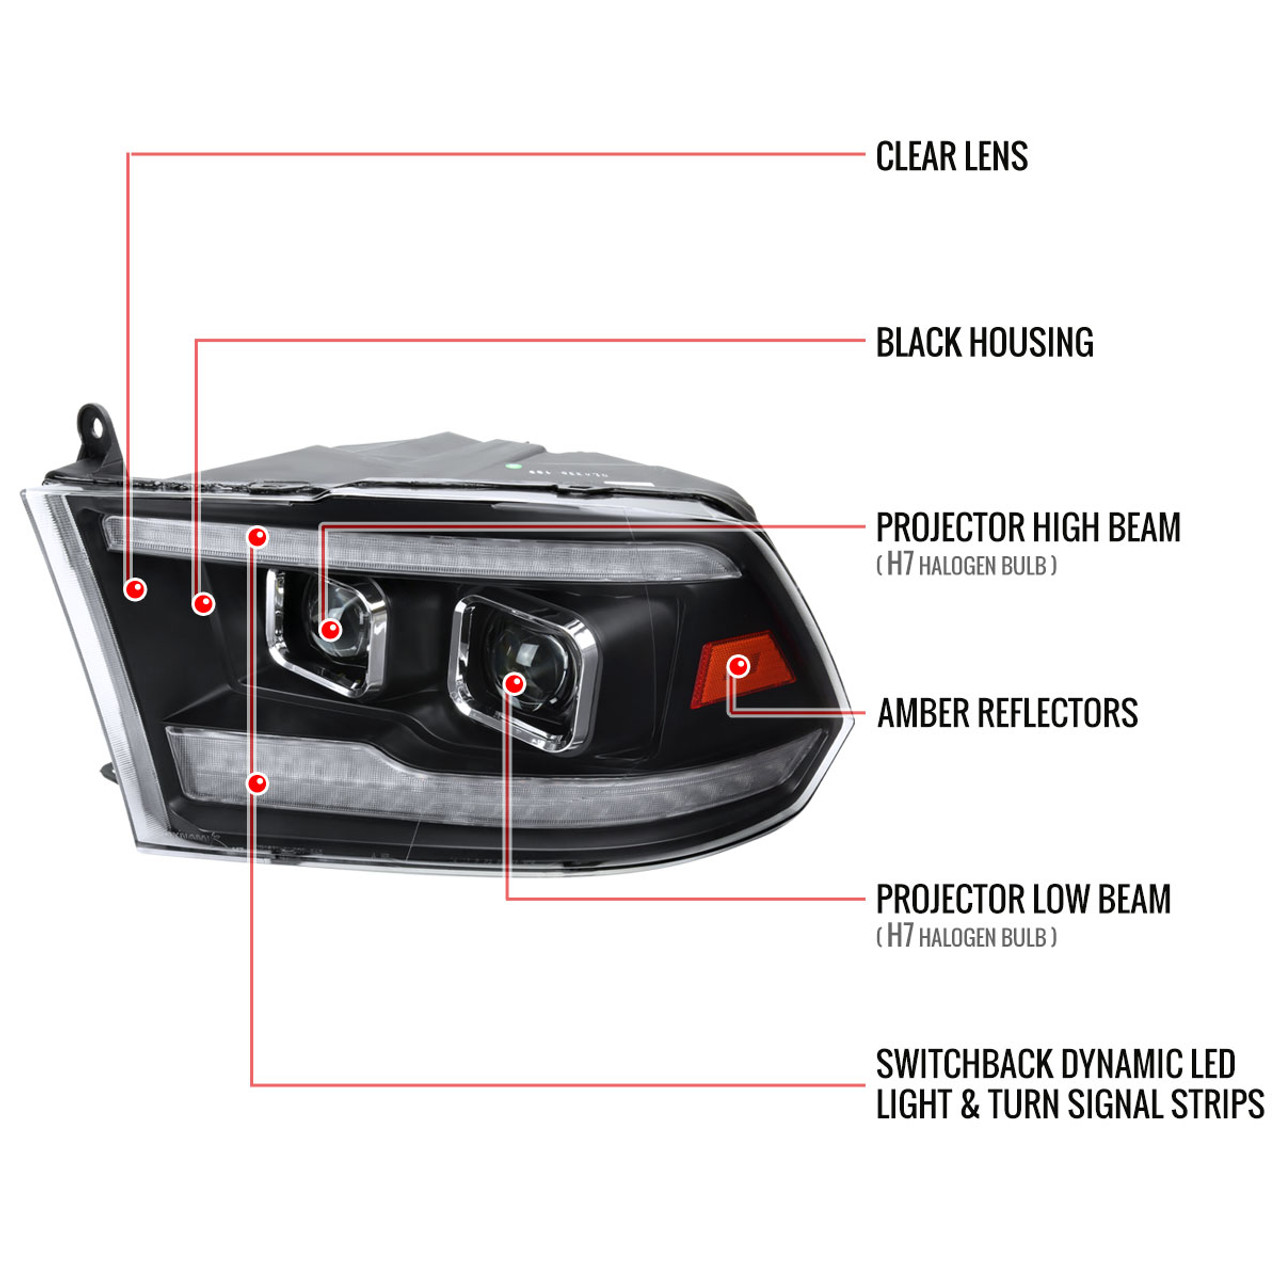  Spec-D 調音噴射黑色LED 雙光環投影機頭燈相容於2009-2018 Dodge Ram 1500、2010-2018 Dodge  Ram 2500/3500 左+ 右對頭燈組件: 汽車